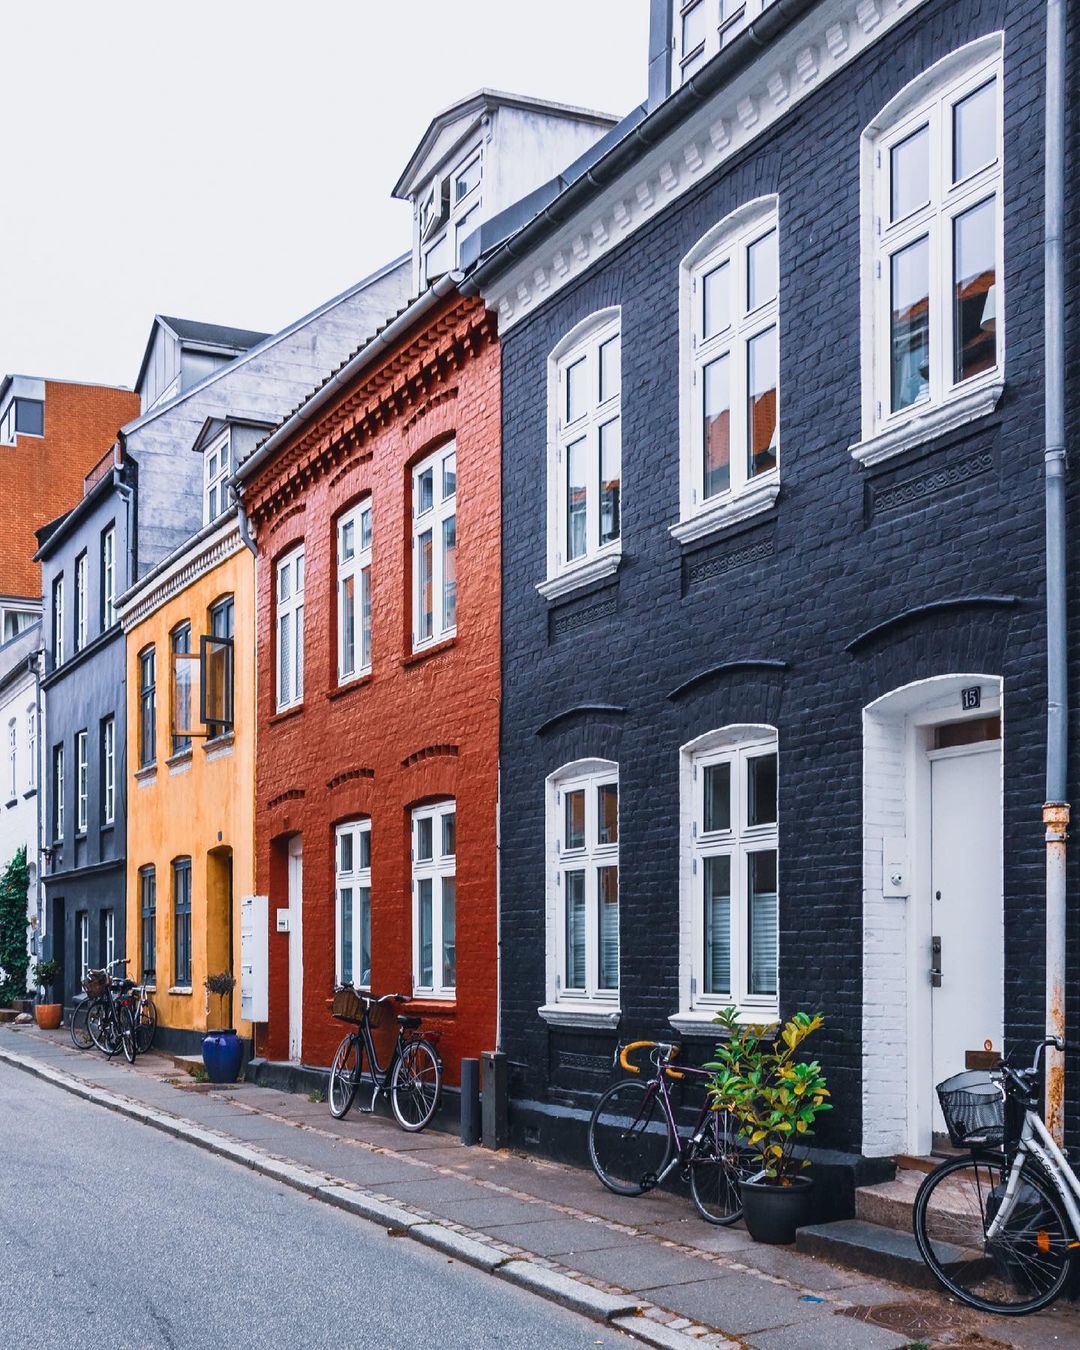 Улицы и архитектура Дании на снимках Адама Бросбеля